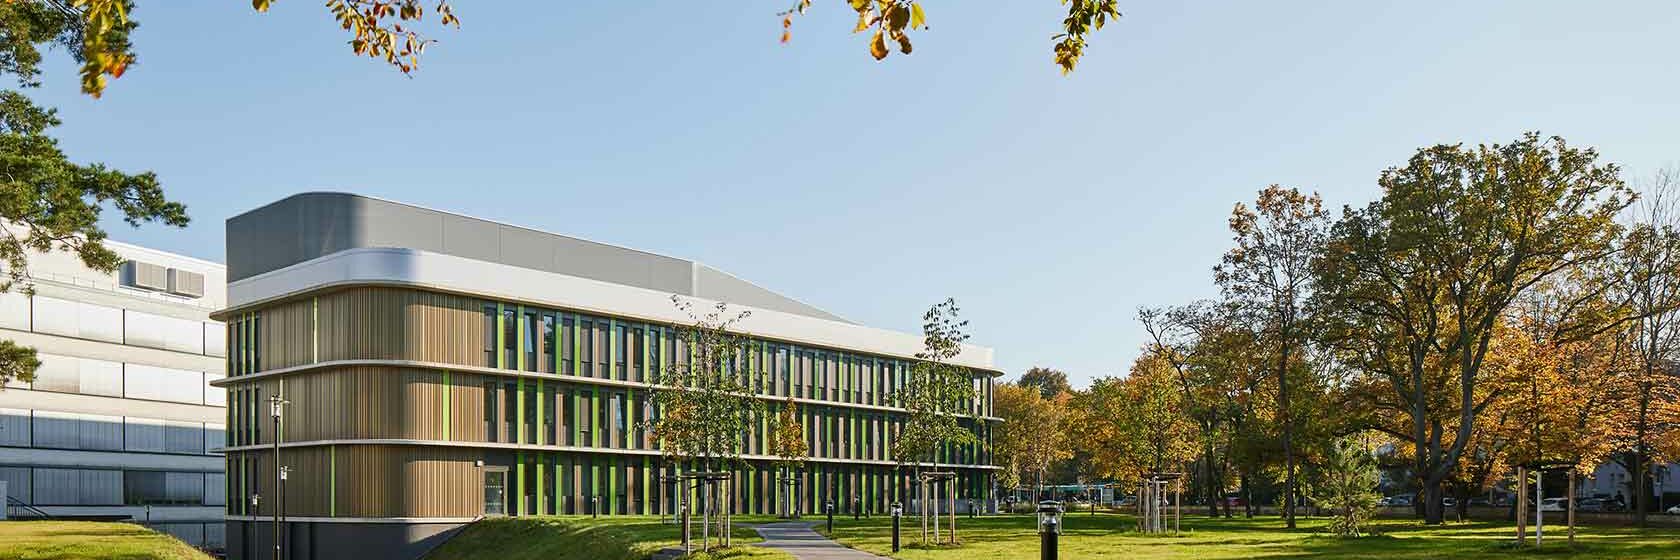 Universitätsklinikum Bonn, BMZ II